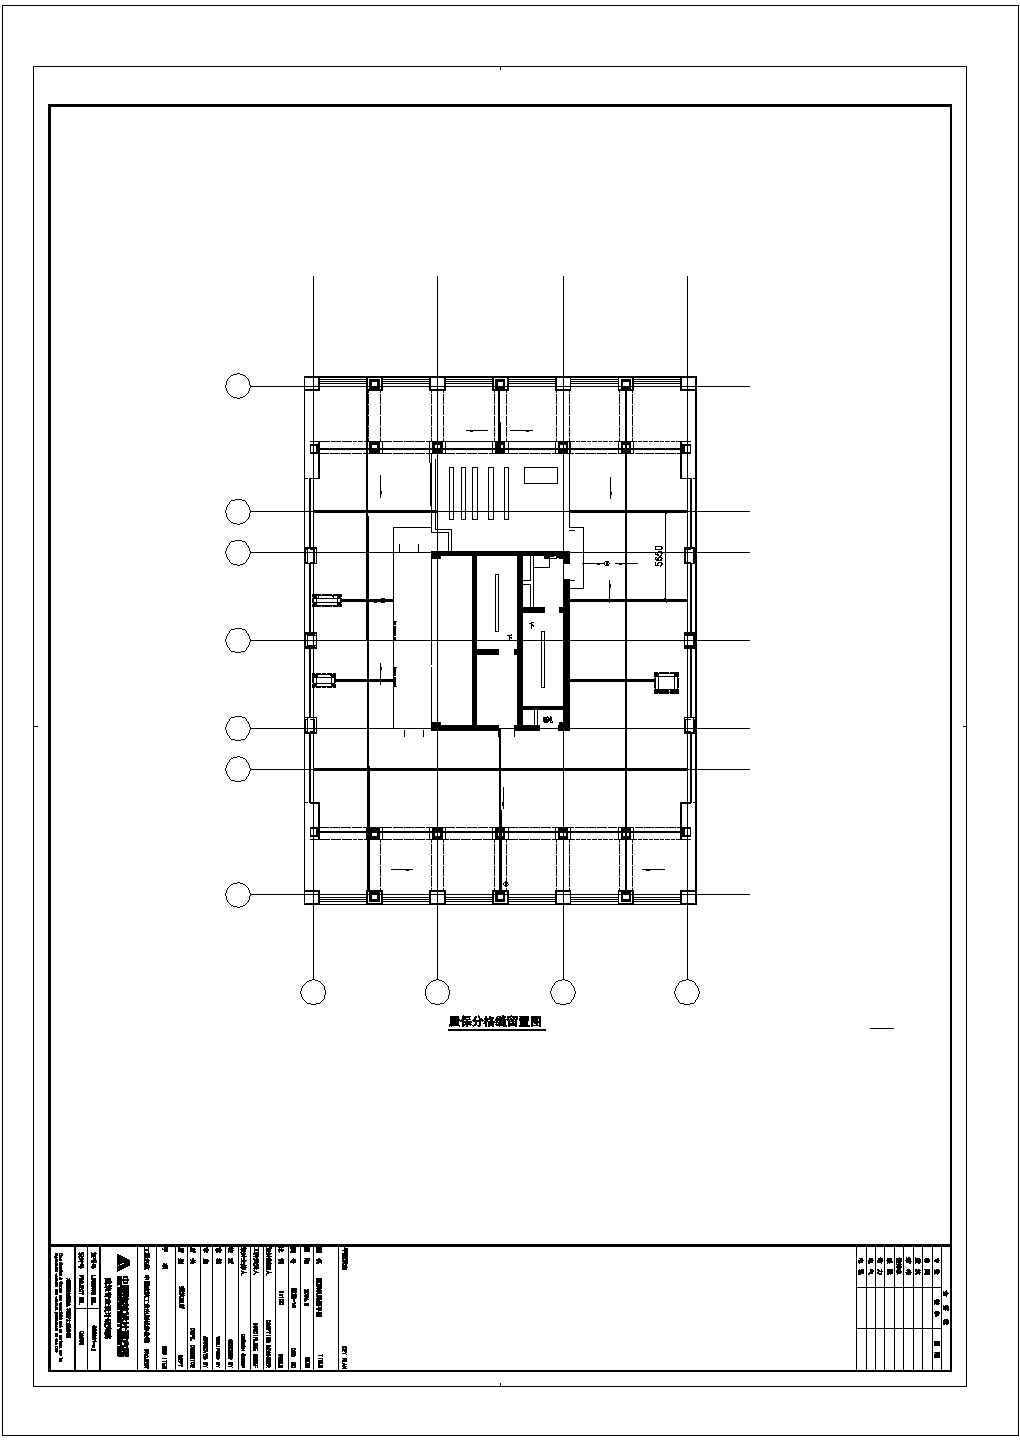 屋顶机房排气管道留置建设CAD规划图